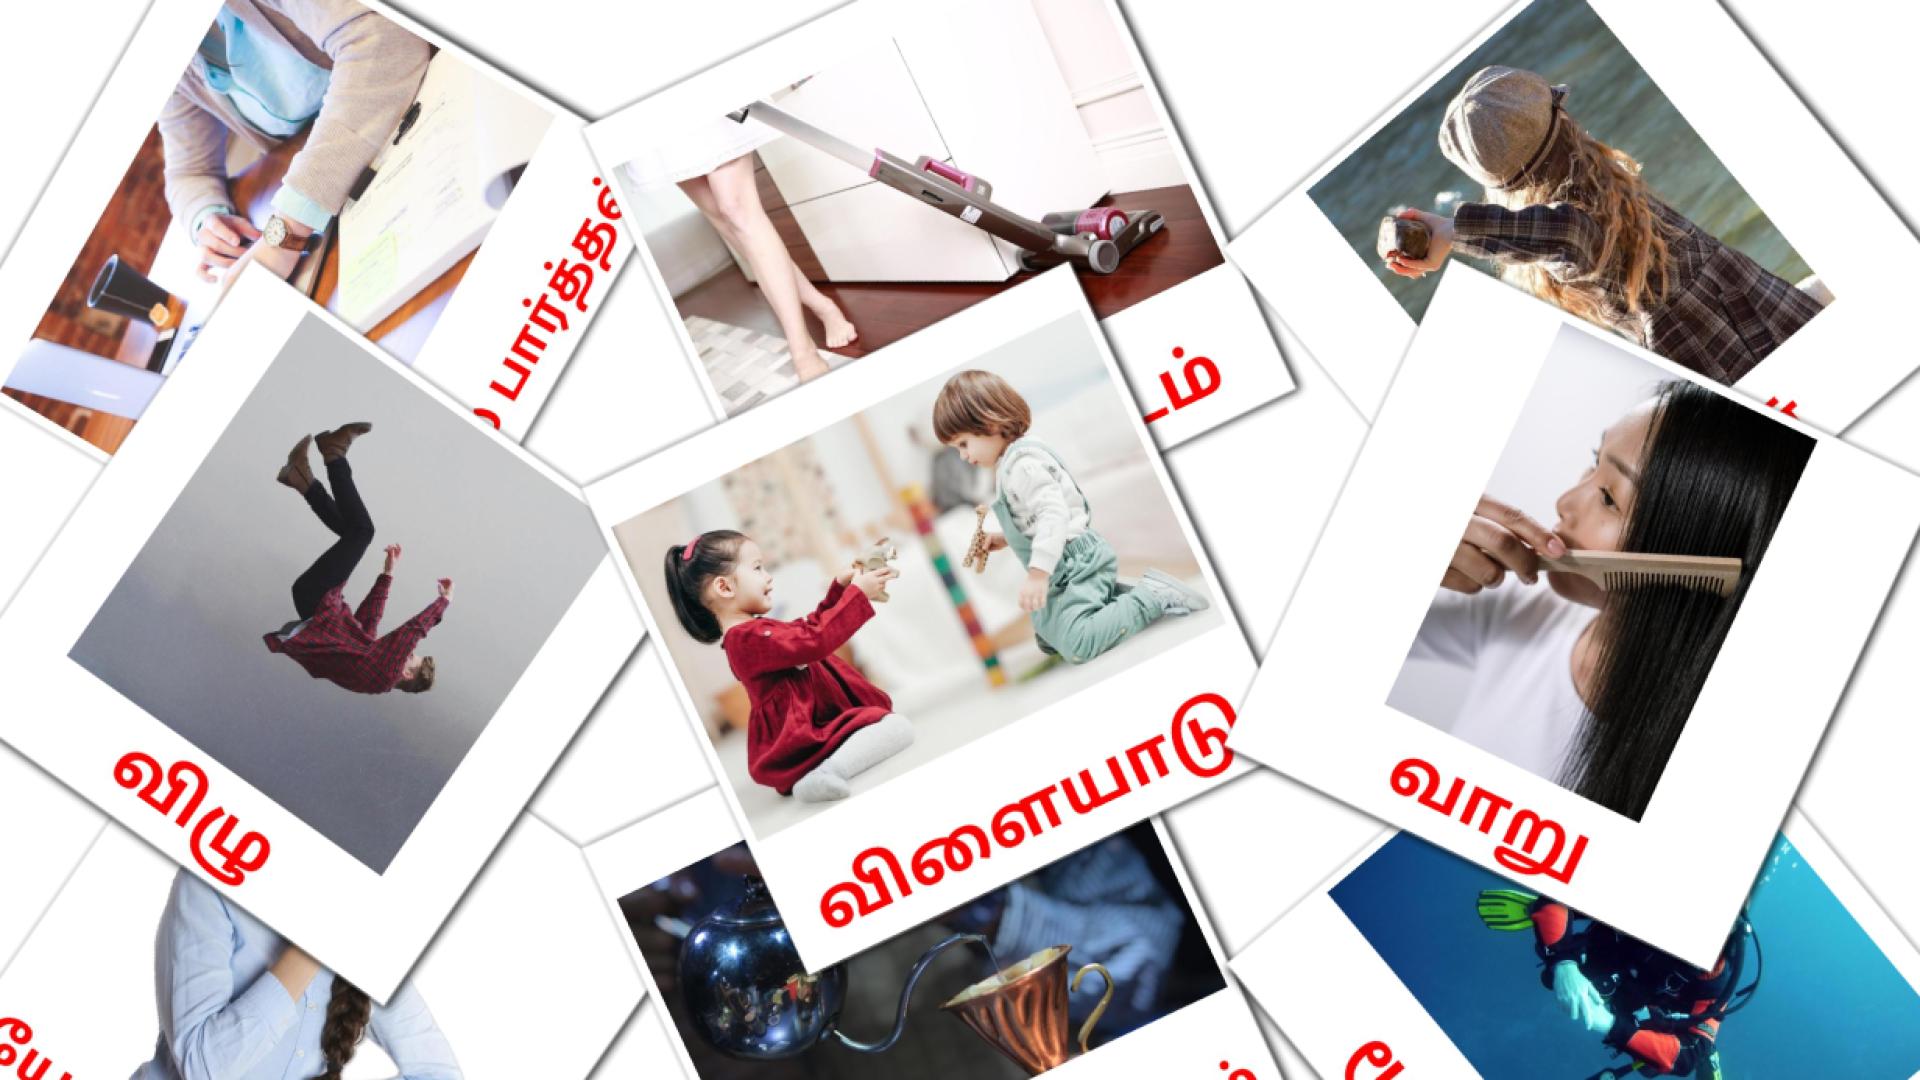 tamil tarjetas de vocabulario en வினைச்சொற்கள்